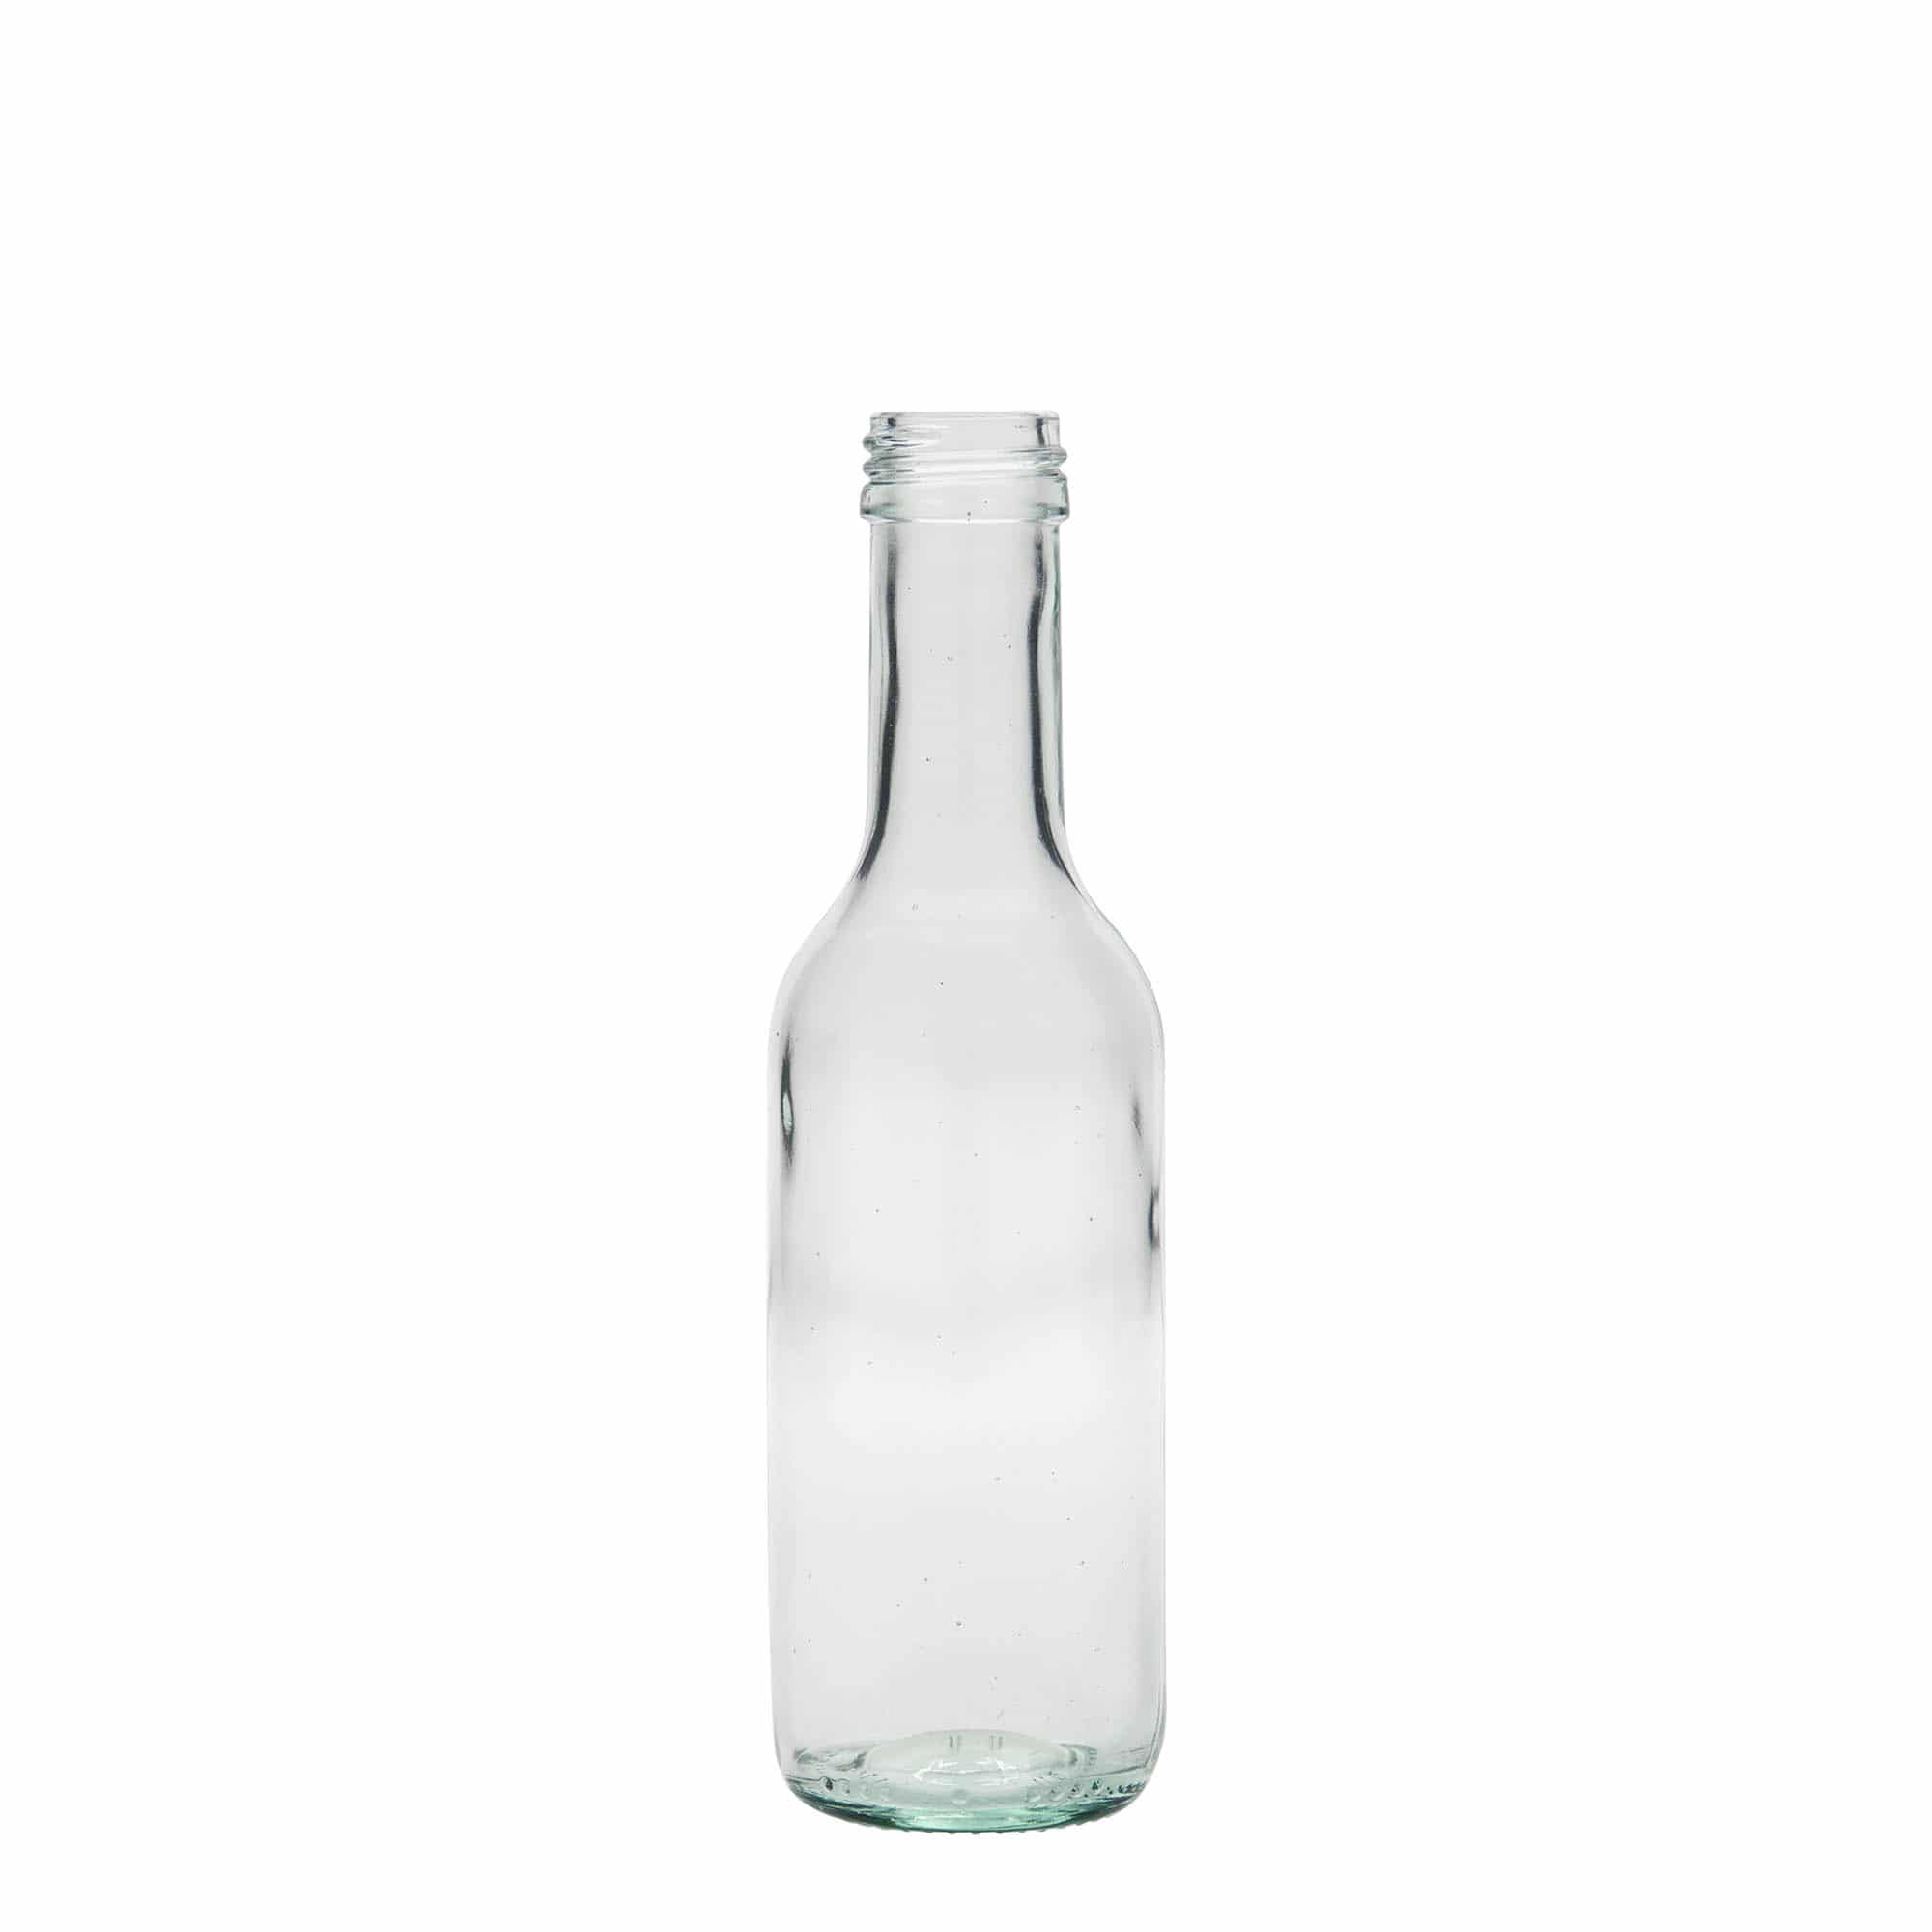 187 ml glass bottle 'Bordeaux Airline', closure: PP 28